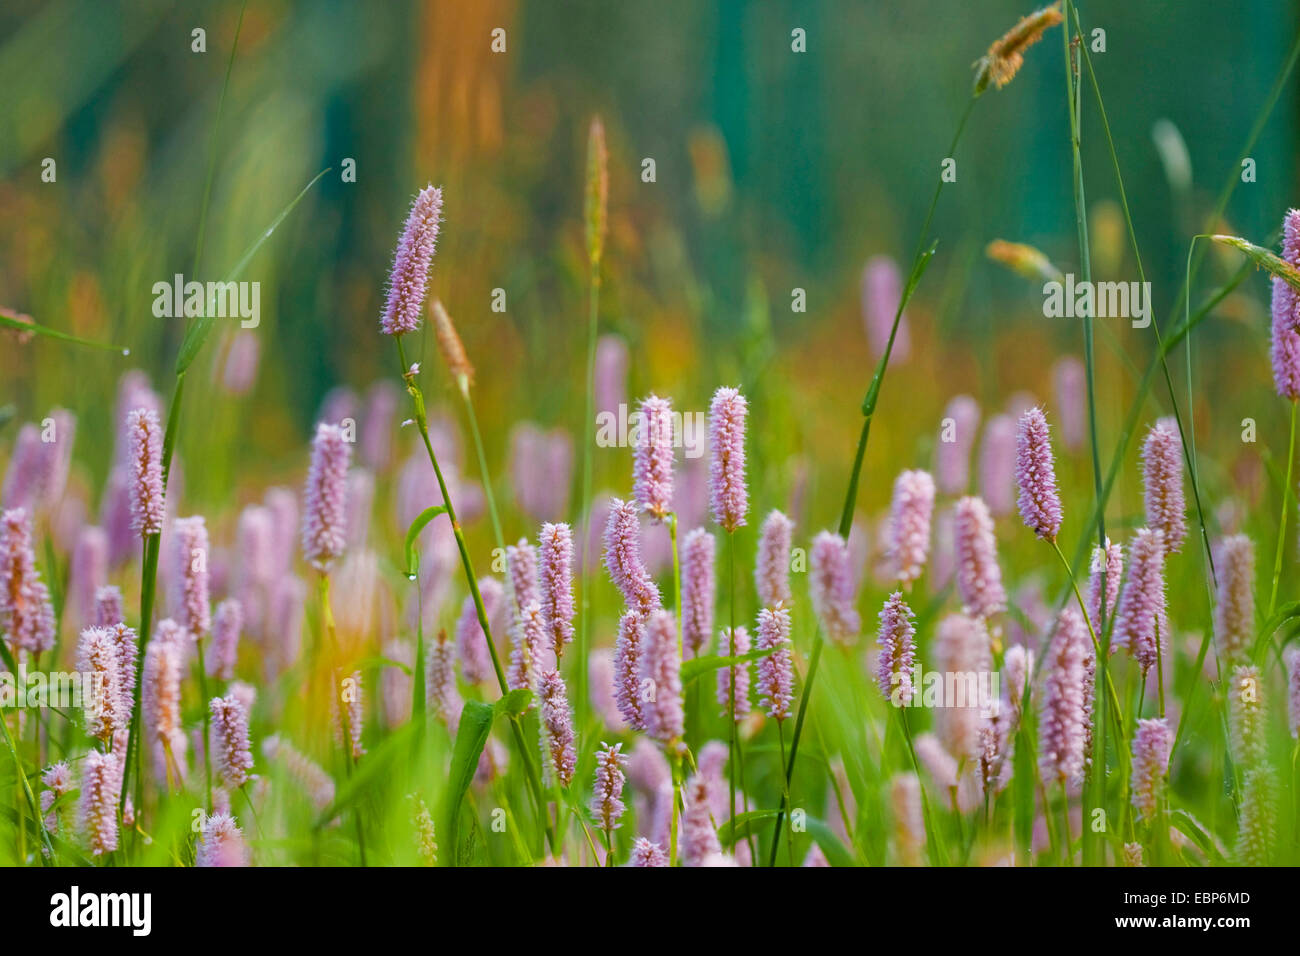 Common bistort, Meadow bistort (Polygonum bistorta, Bistorta officinalis, Bistorta major, Persicaria bistorta), bloomin in a meadow, Germany, North Rhine-Westphalia Stock Photo